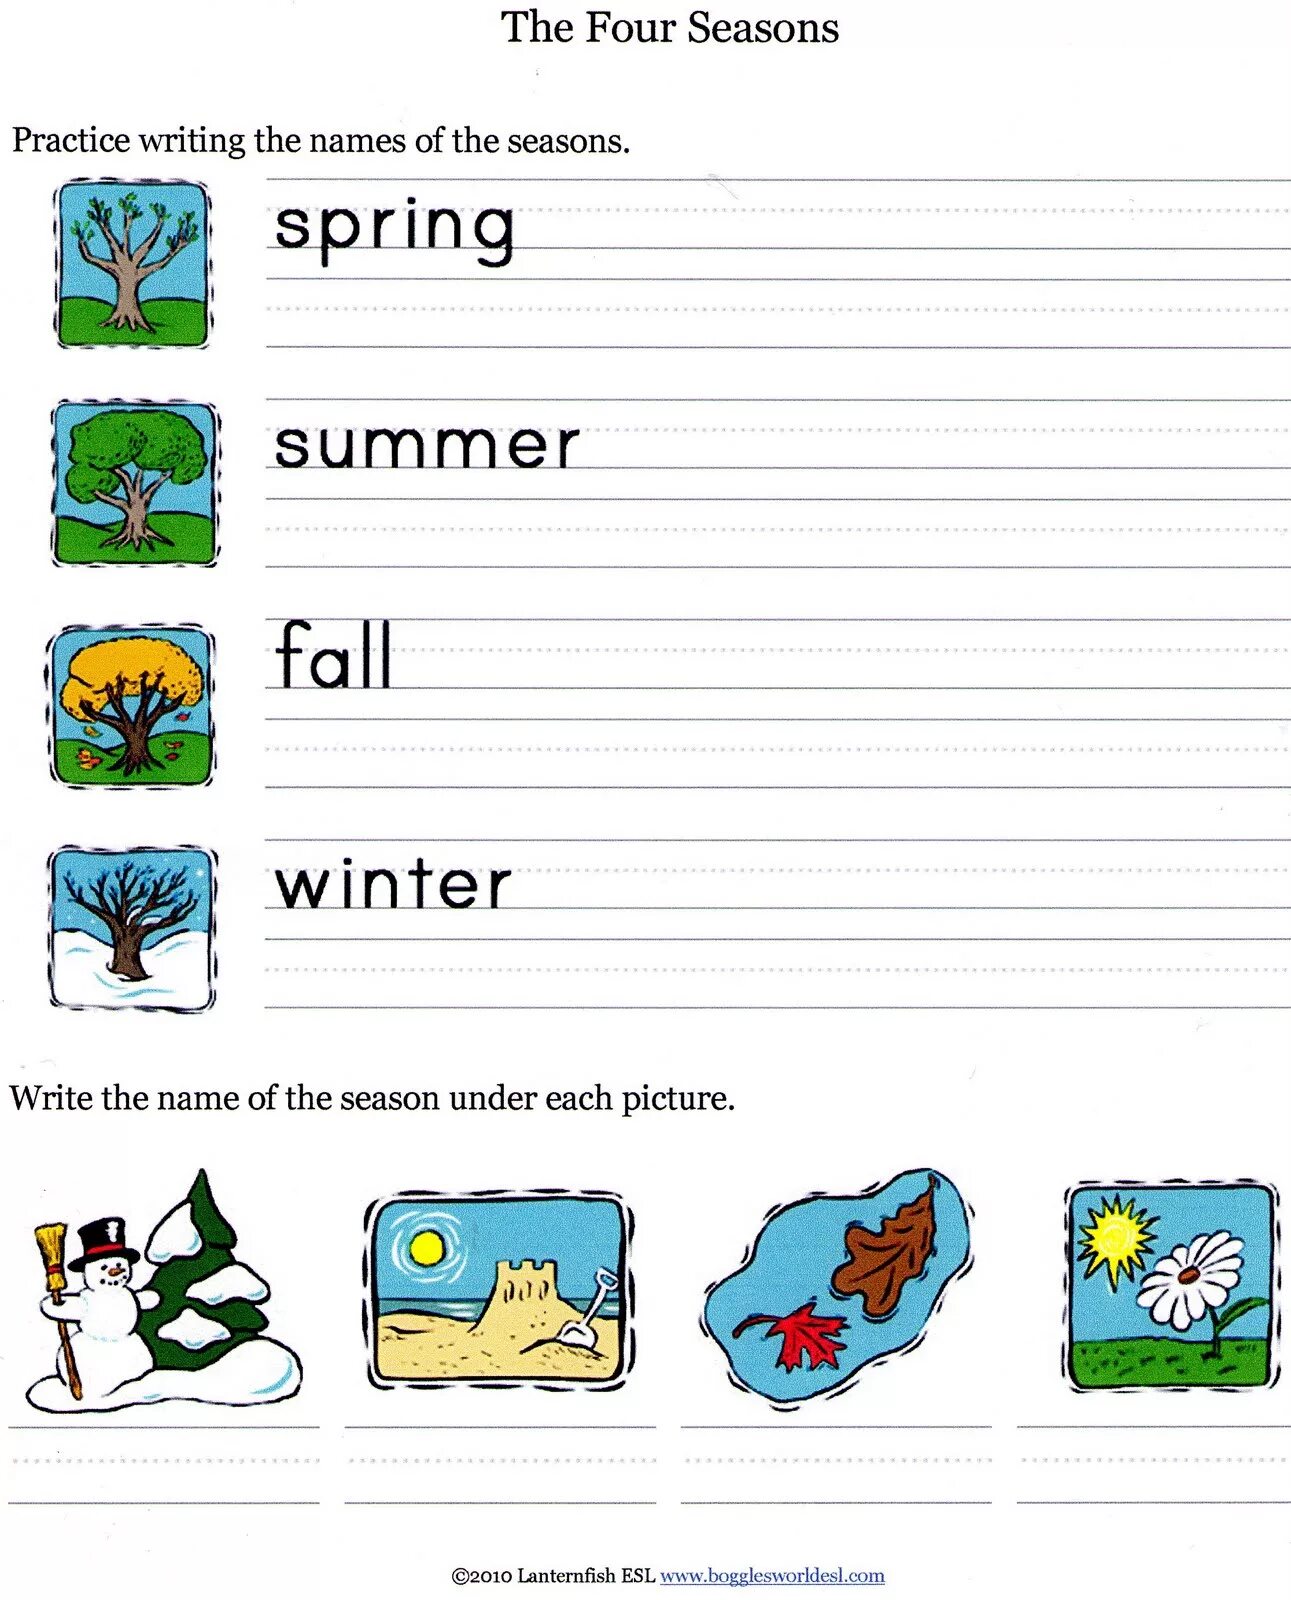 Seasons tasks. Seasons задания для детей. Seasons for Kids задания. Seasons прописи. Задания по английскому языку времена года.